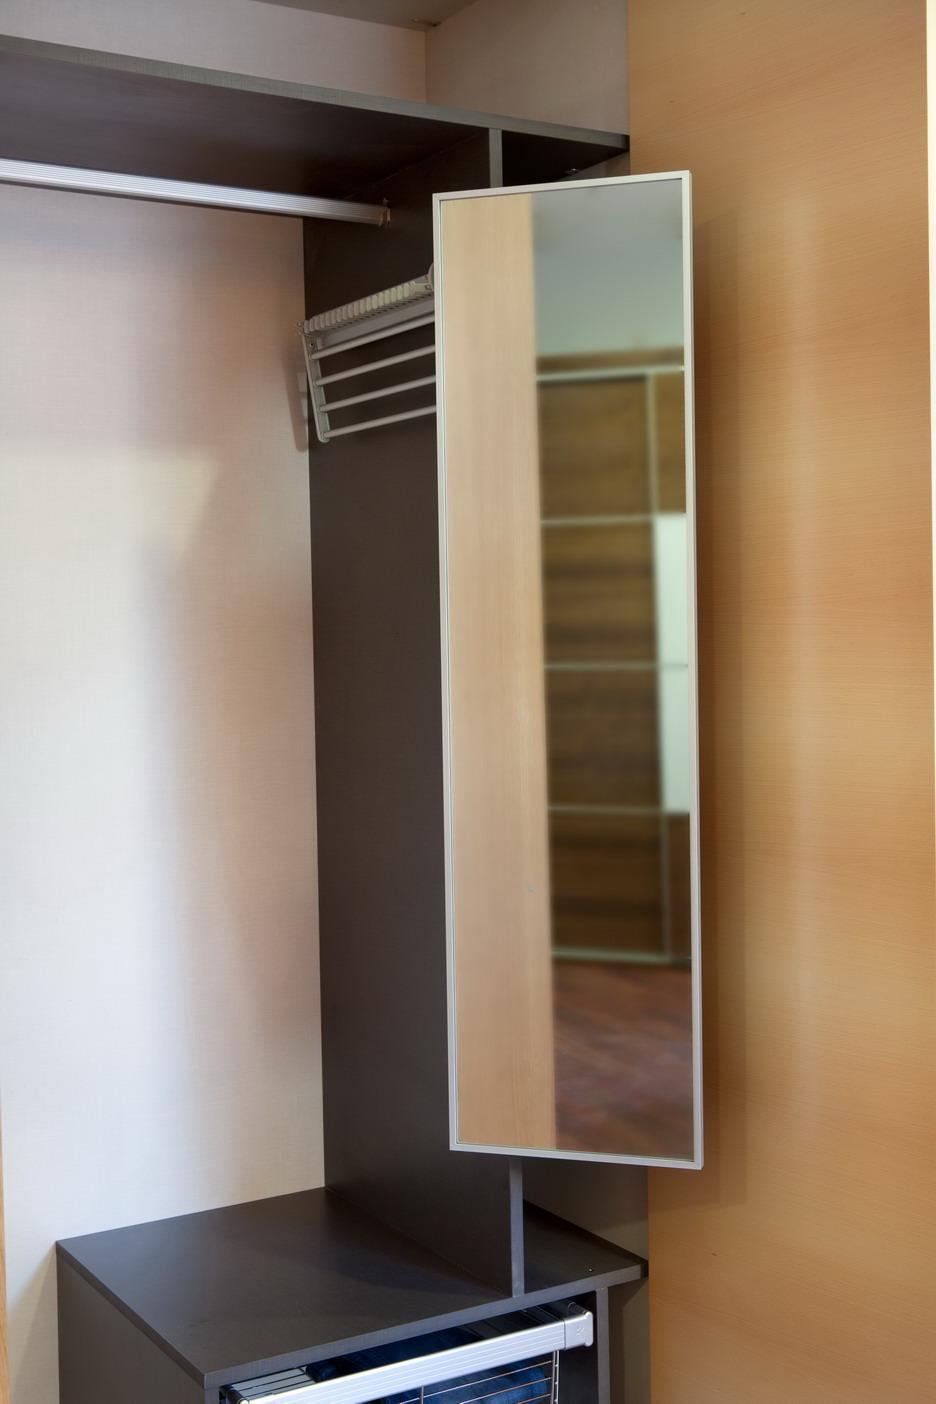 Espejo Giratorio en Aluminio - Este espejo giratorio fabricado en aluminio anodizado de excelente calidad ideal para su uso en los armarios y closets. - Utilizable a izquierda y derecha.